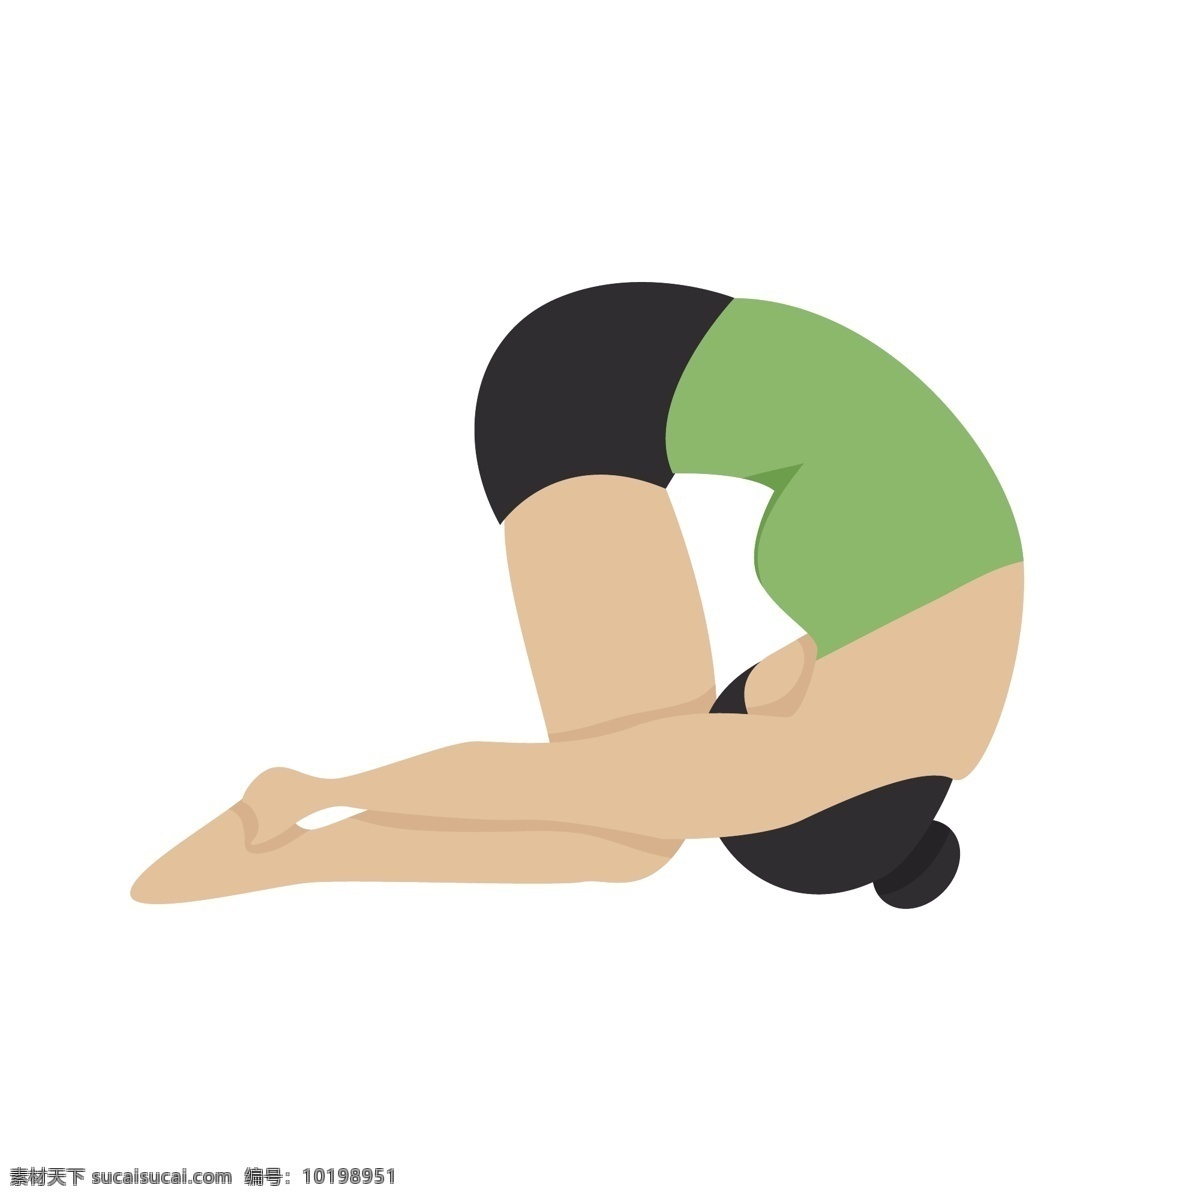 半 倒立 瑜伽 姿势 矢量 瑜伽姿势 瑜伽动作 动作姿势 卡通 卡通瑜伽 卡通女人 瑜伽女人 瑜伽运动 体育运动